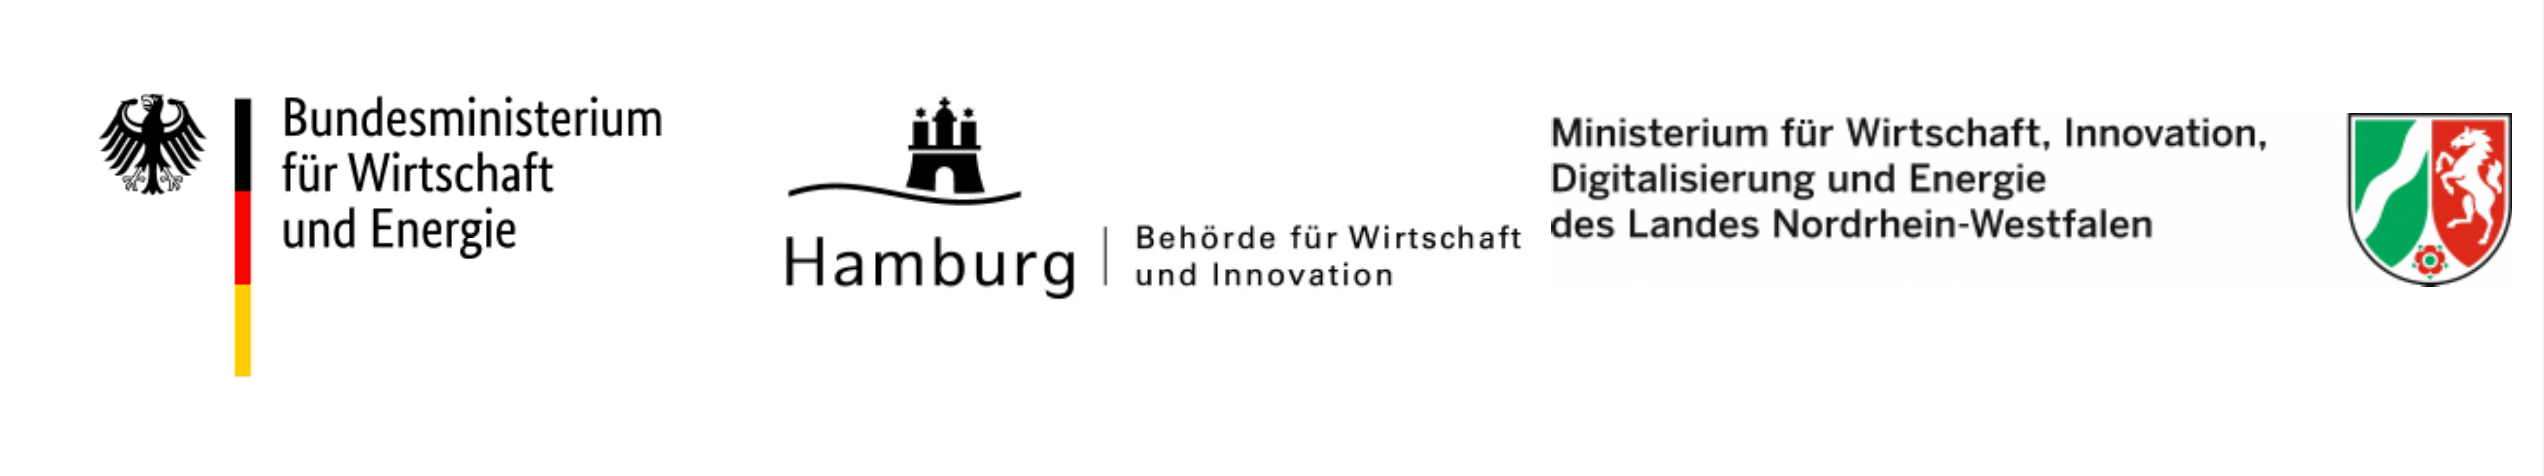 BMWi und Hamburg Behörde für Wirtschaft und Innovation und Ministerium für Wirtschaft, Innovation, Digitalisierung und Energie des Landes Nordrhein-Westfalen